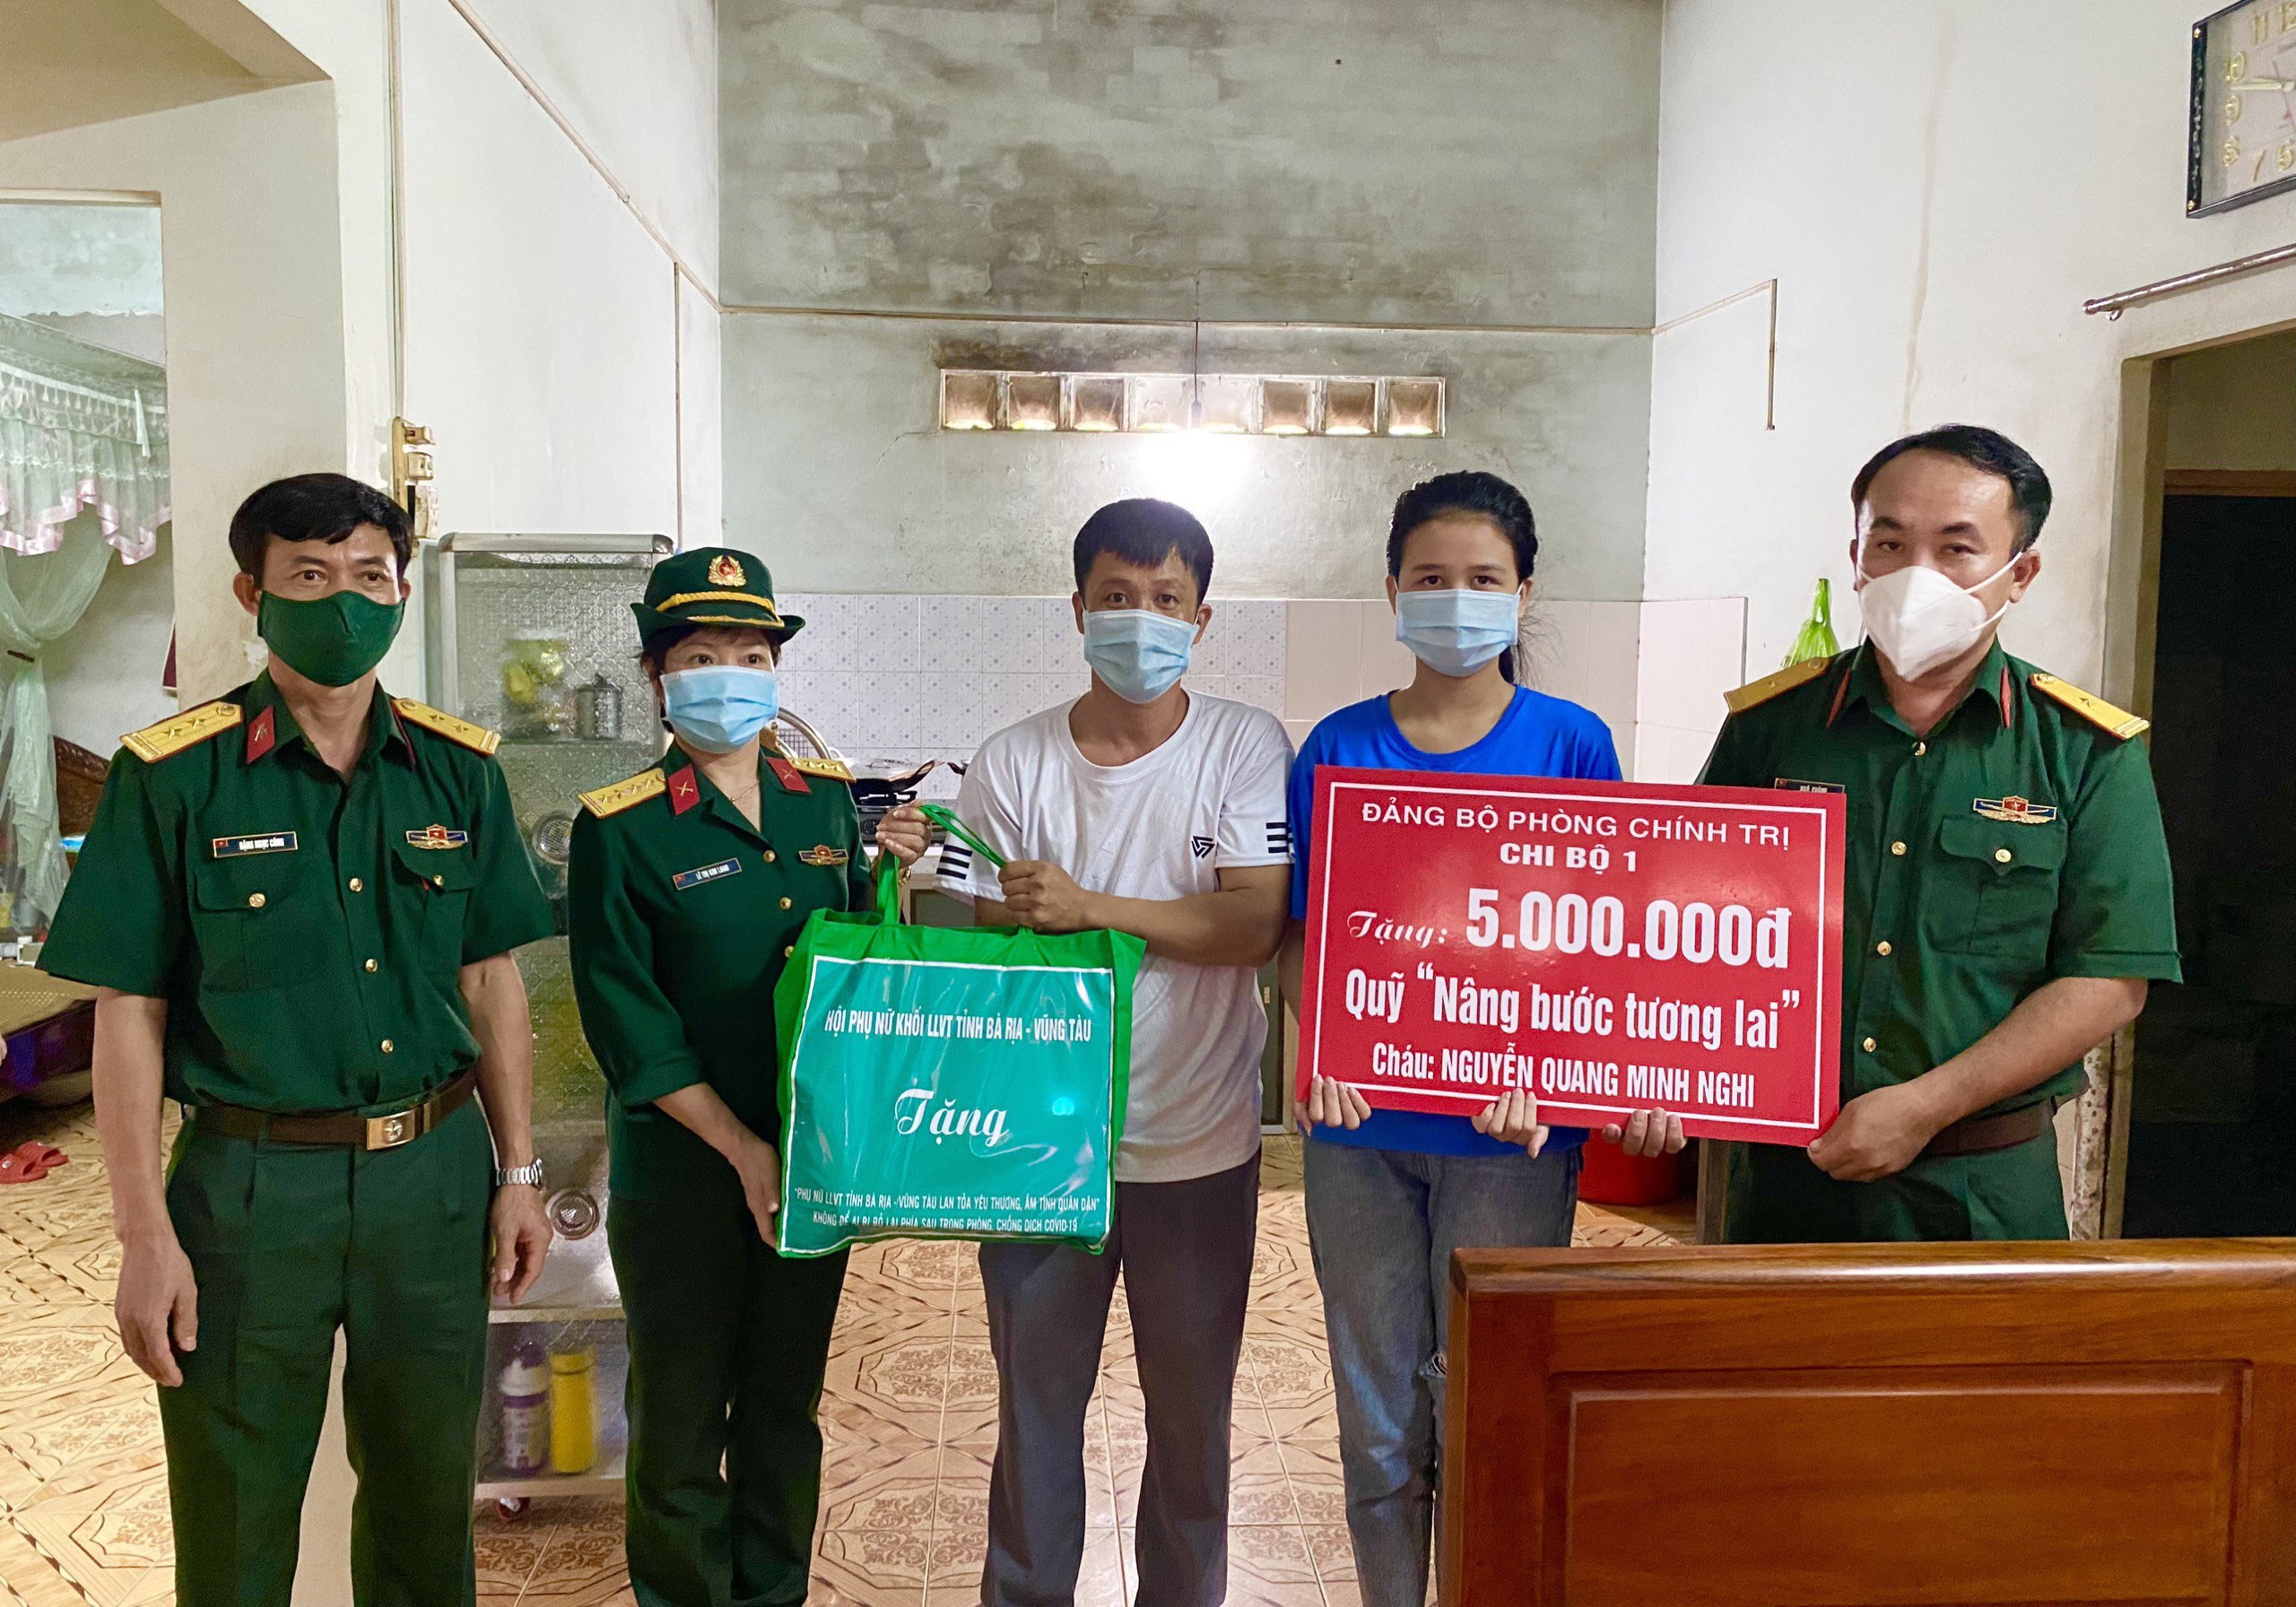 Đại diện Chi bộ 1, Đảng bộ Phòng Chính trị - Bộ CHQS tỉnh (bên phải) trao bảng tượng trưng nhận đỡ đầu đến hết lớp 12 cho em Nguyễn Quang Minh Nghi.